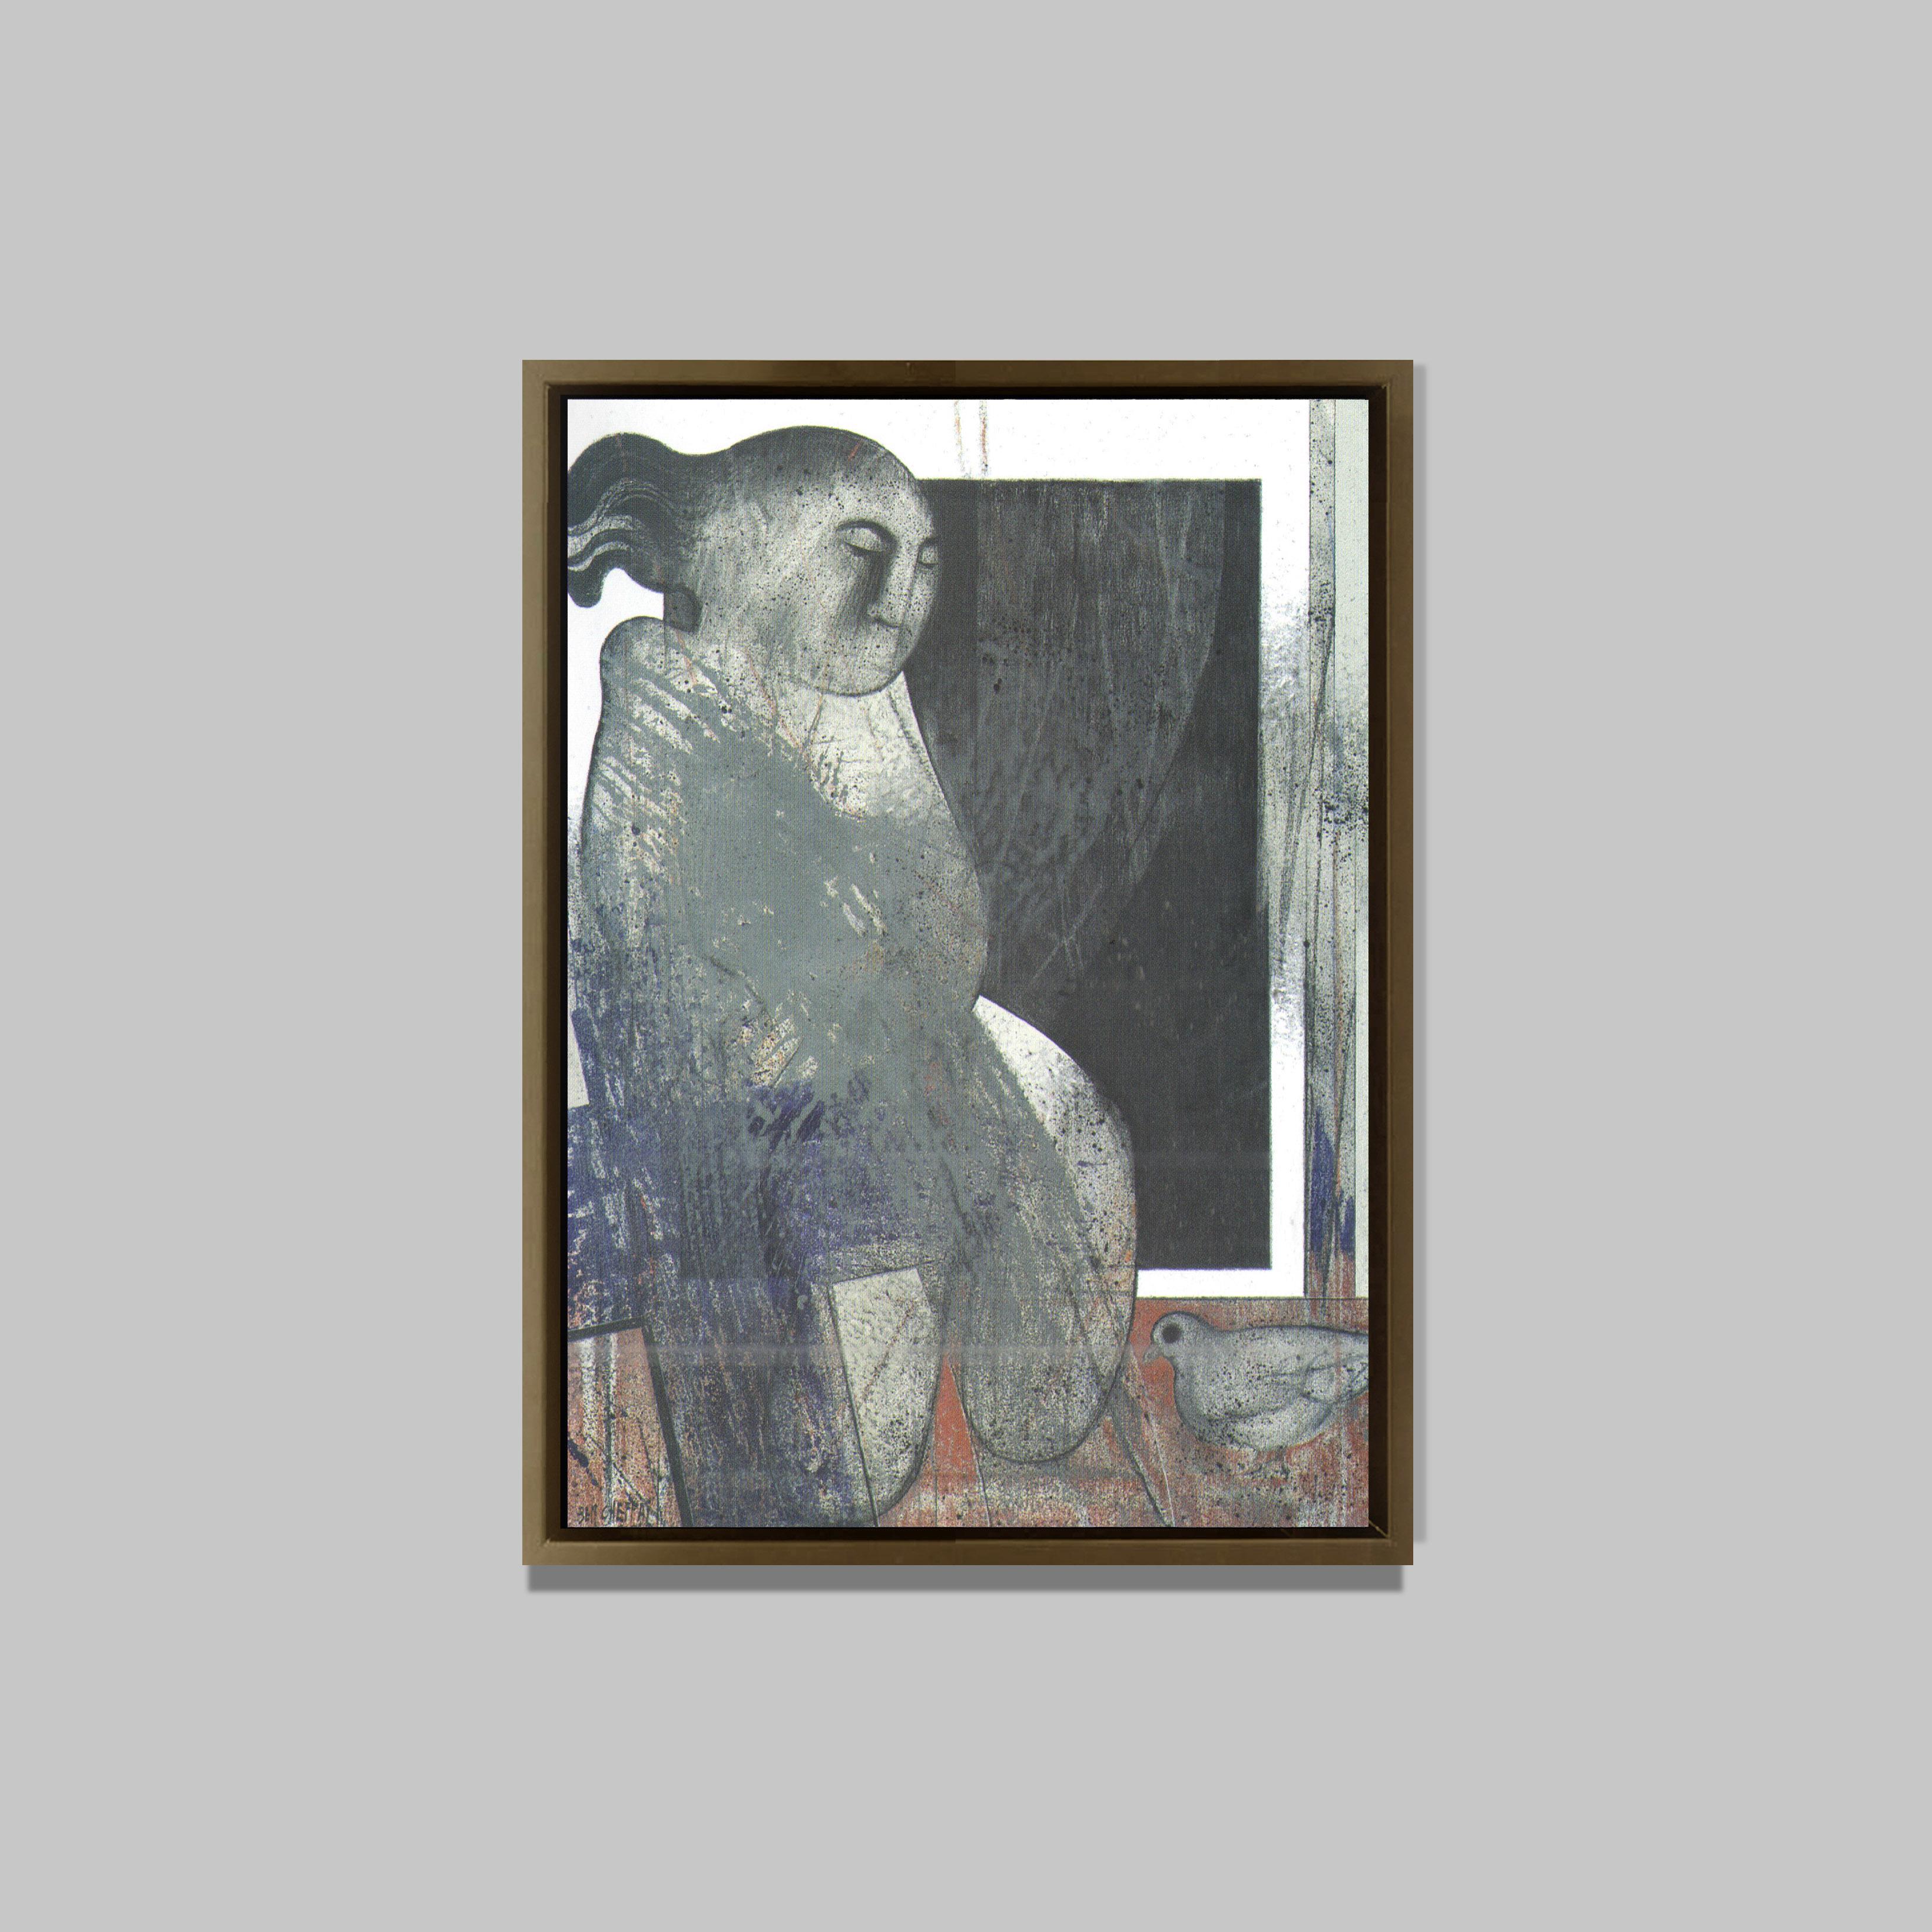 Enfat jouant avec un pigeon, 2006
Huile sur toile
95 x 68 cm